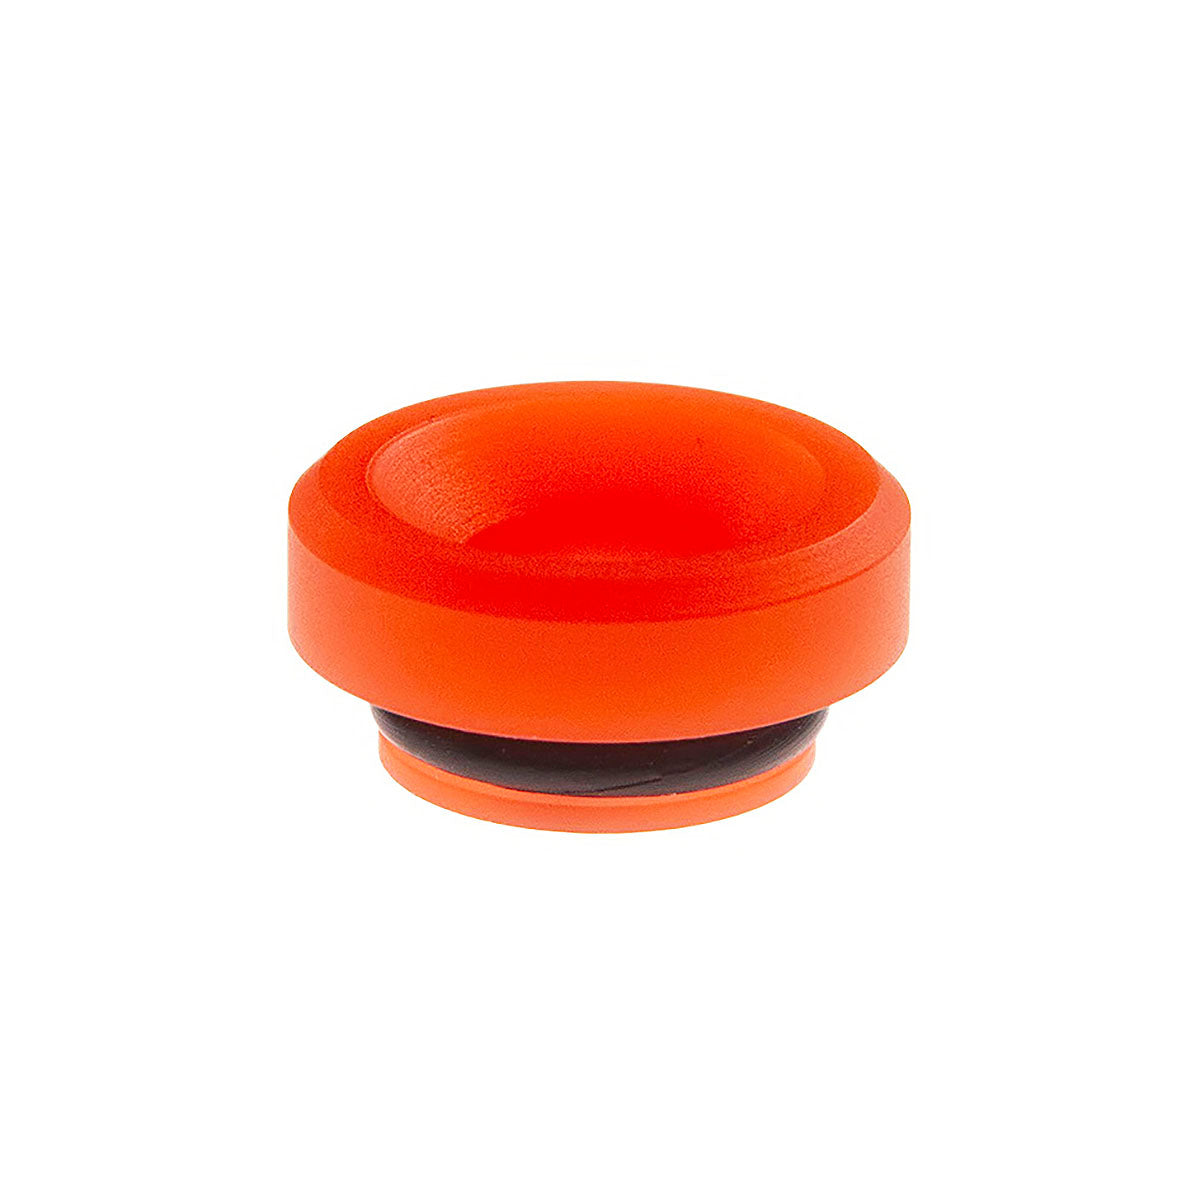 Orange Colour Changer Chop Top Tip by Double Helix Designs